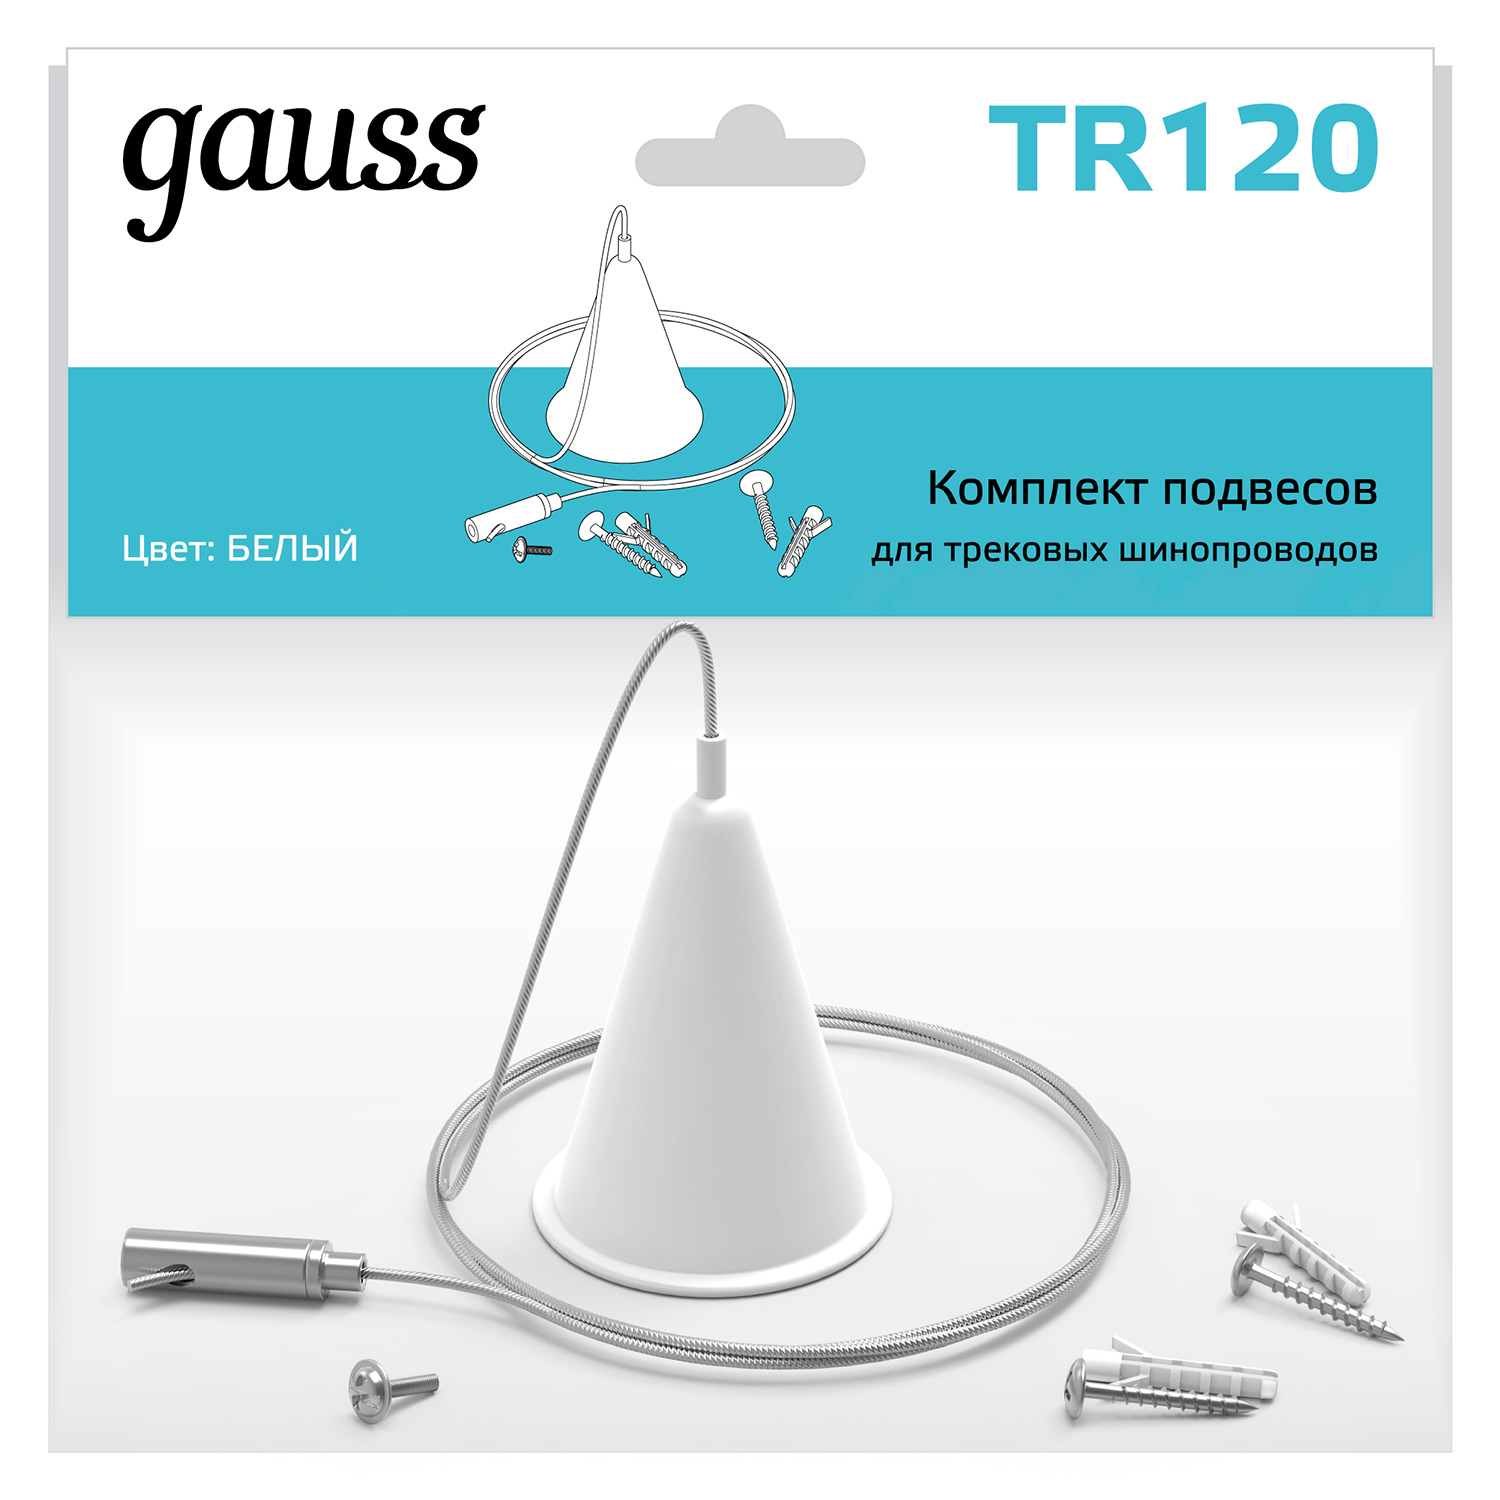 Комплект подвесов для трековых шинопроводов Gauss, цвет белый коннектор gauss для встраиваемых трековых шинопроводов